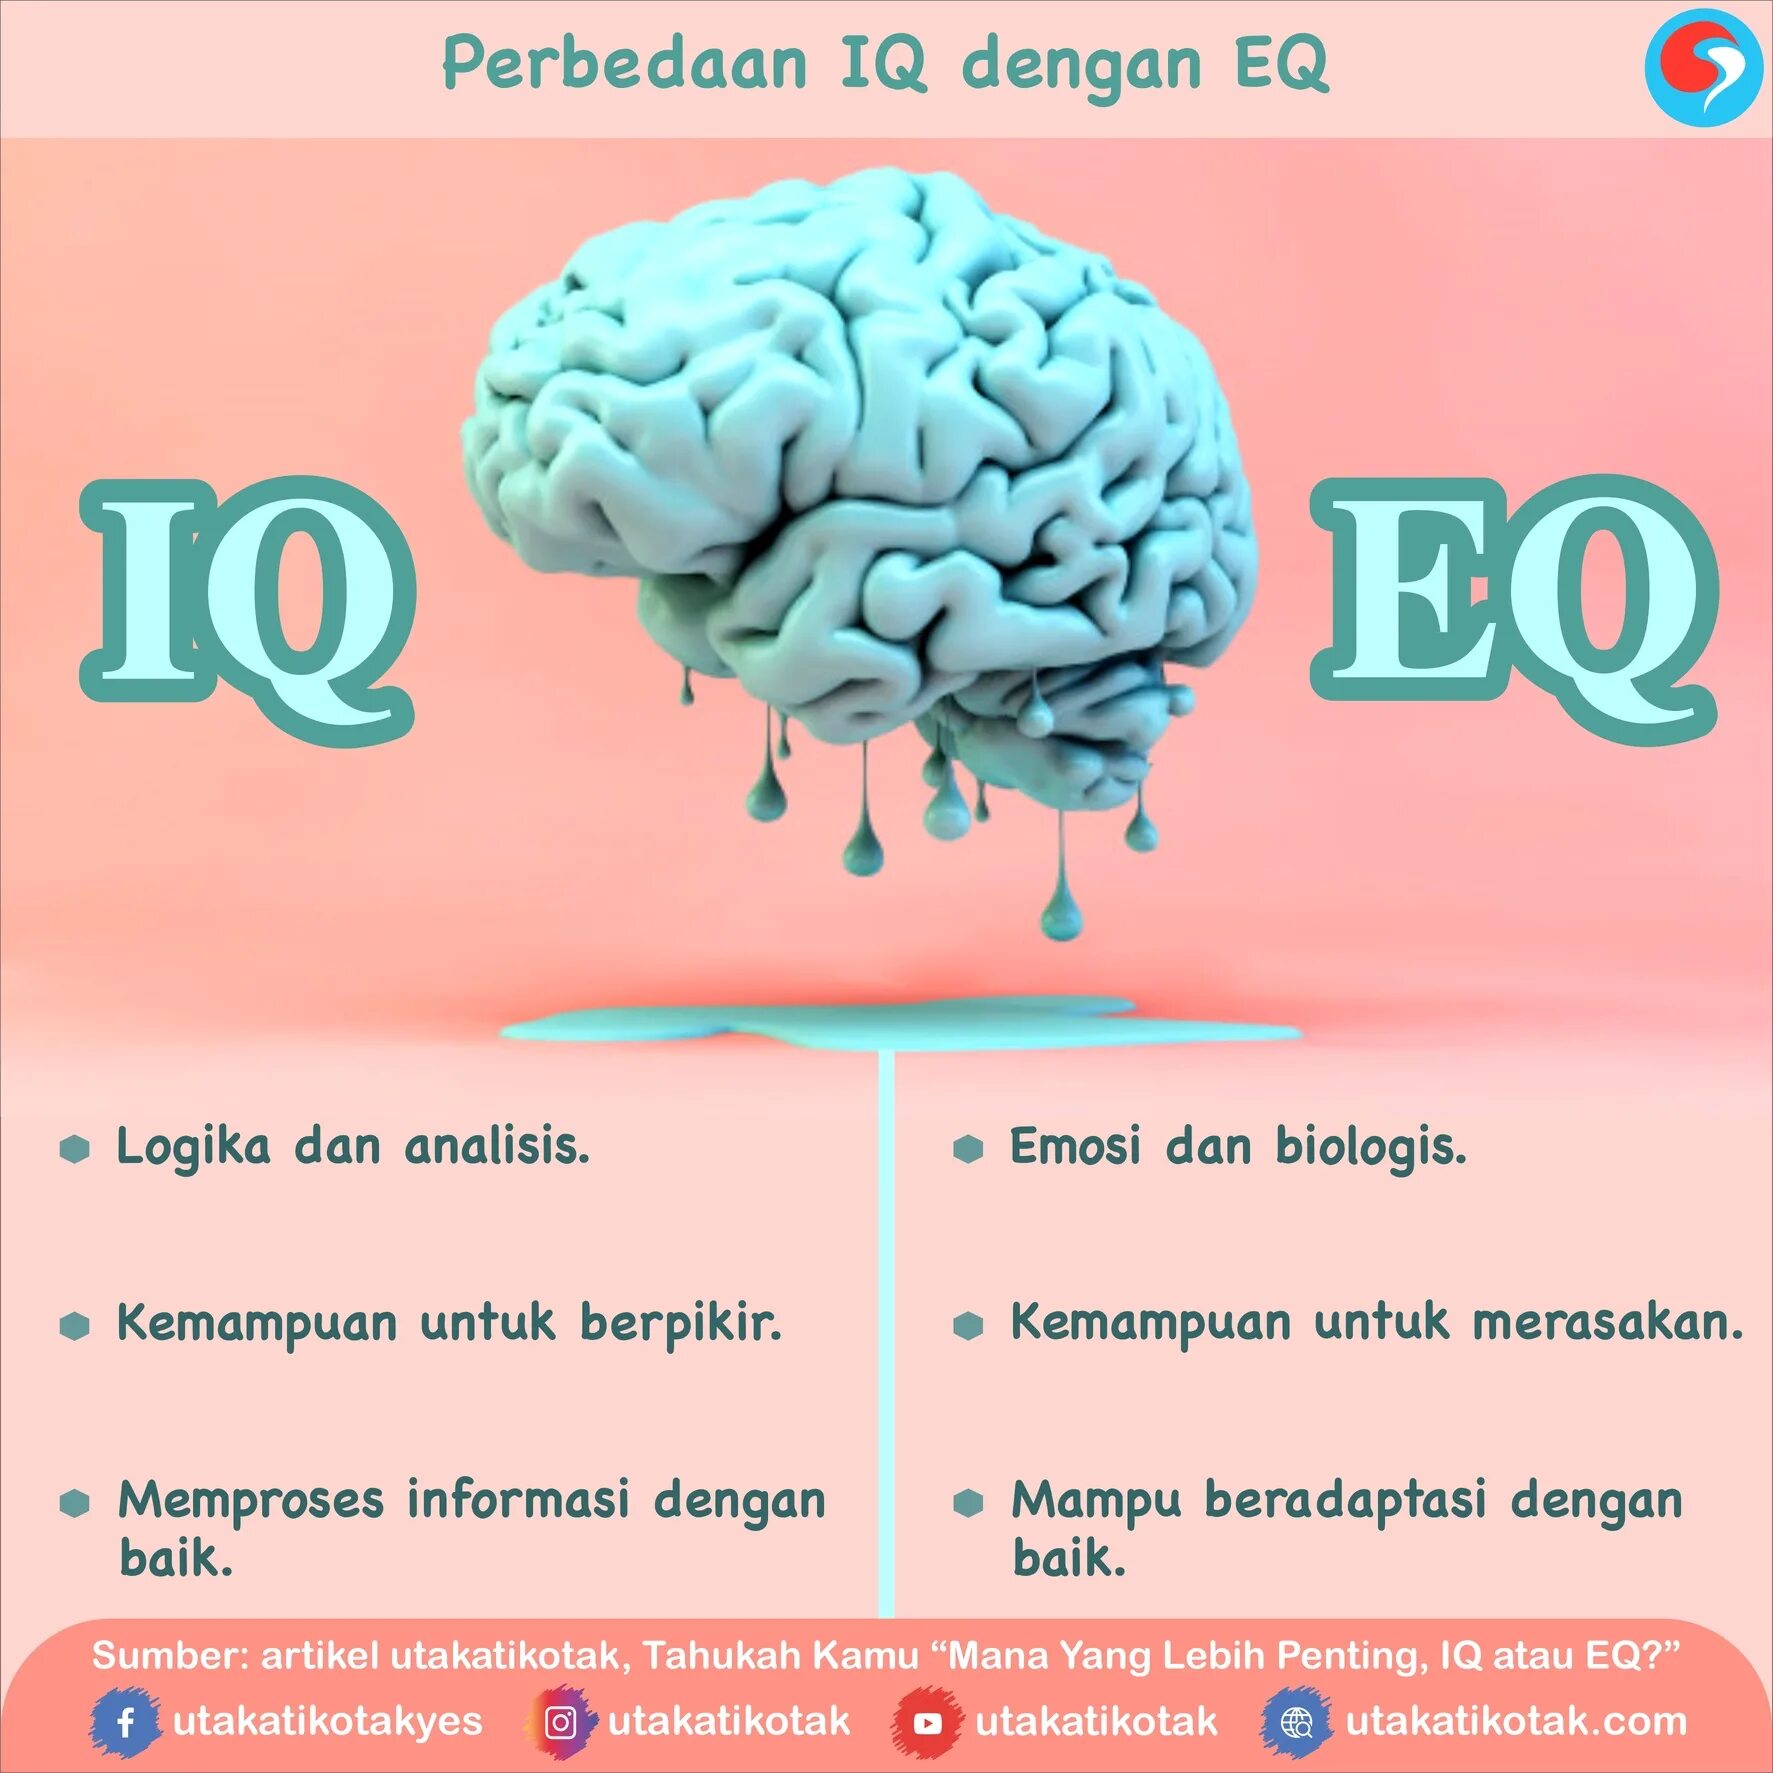 How to get iq. Уровень IQ. Высокий IQ. Высокий показатель IQ. Высокий уровень интеллекта.